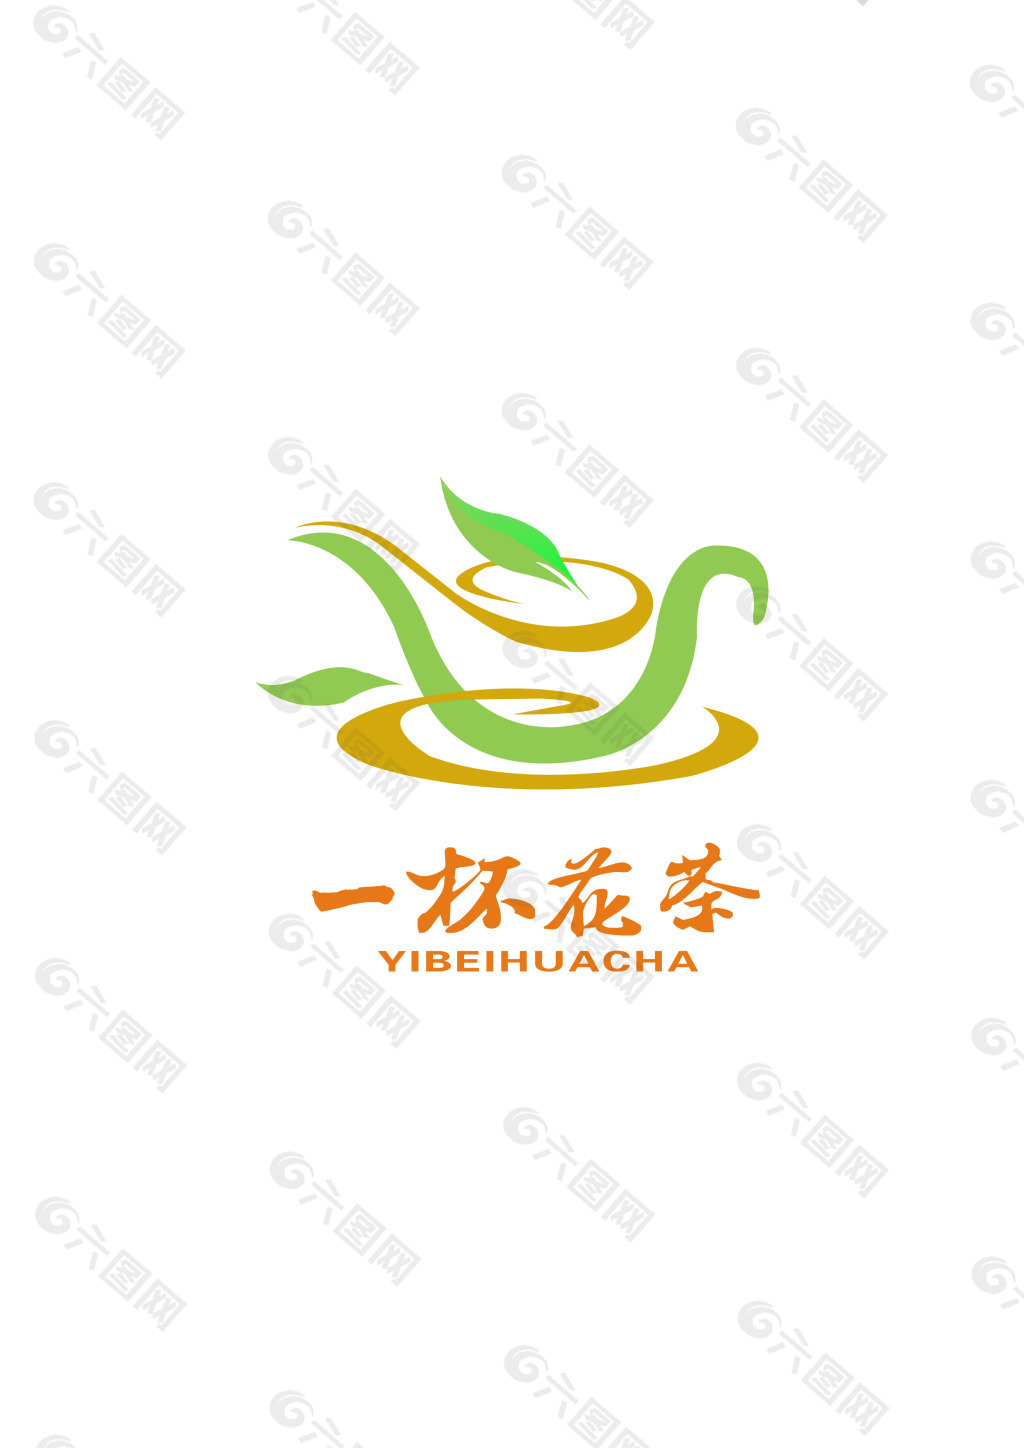 花茶公司logo设计图片